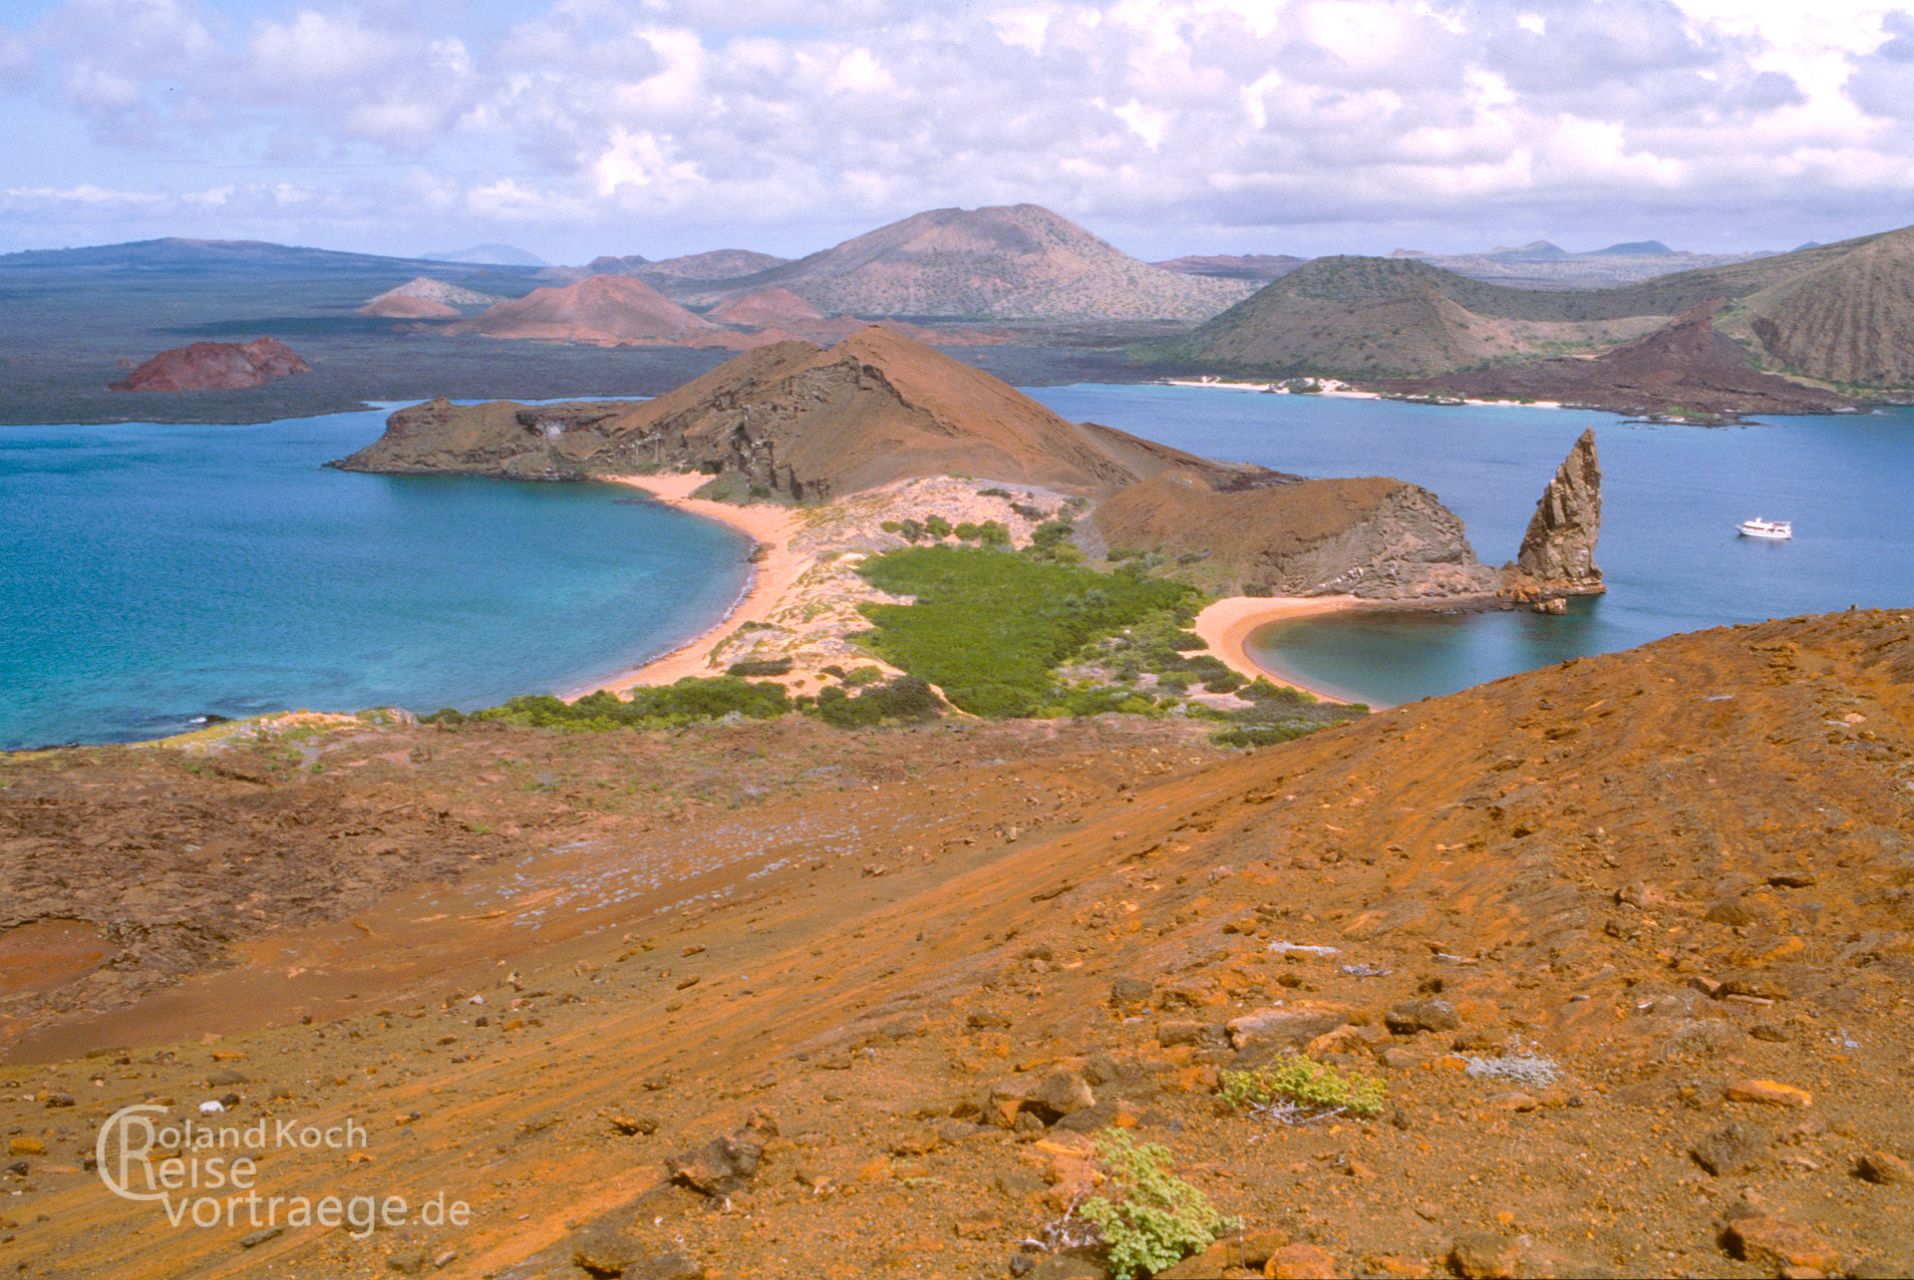 Ecuador - Archipel von Galapagos - Pinnacle Rock/Pináculo von Bartolomé